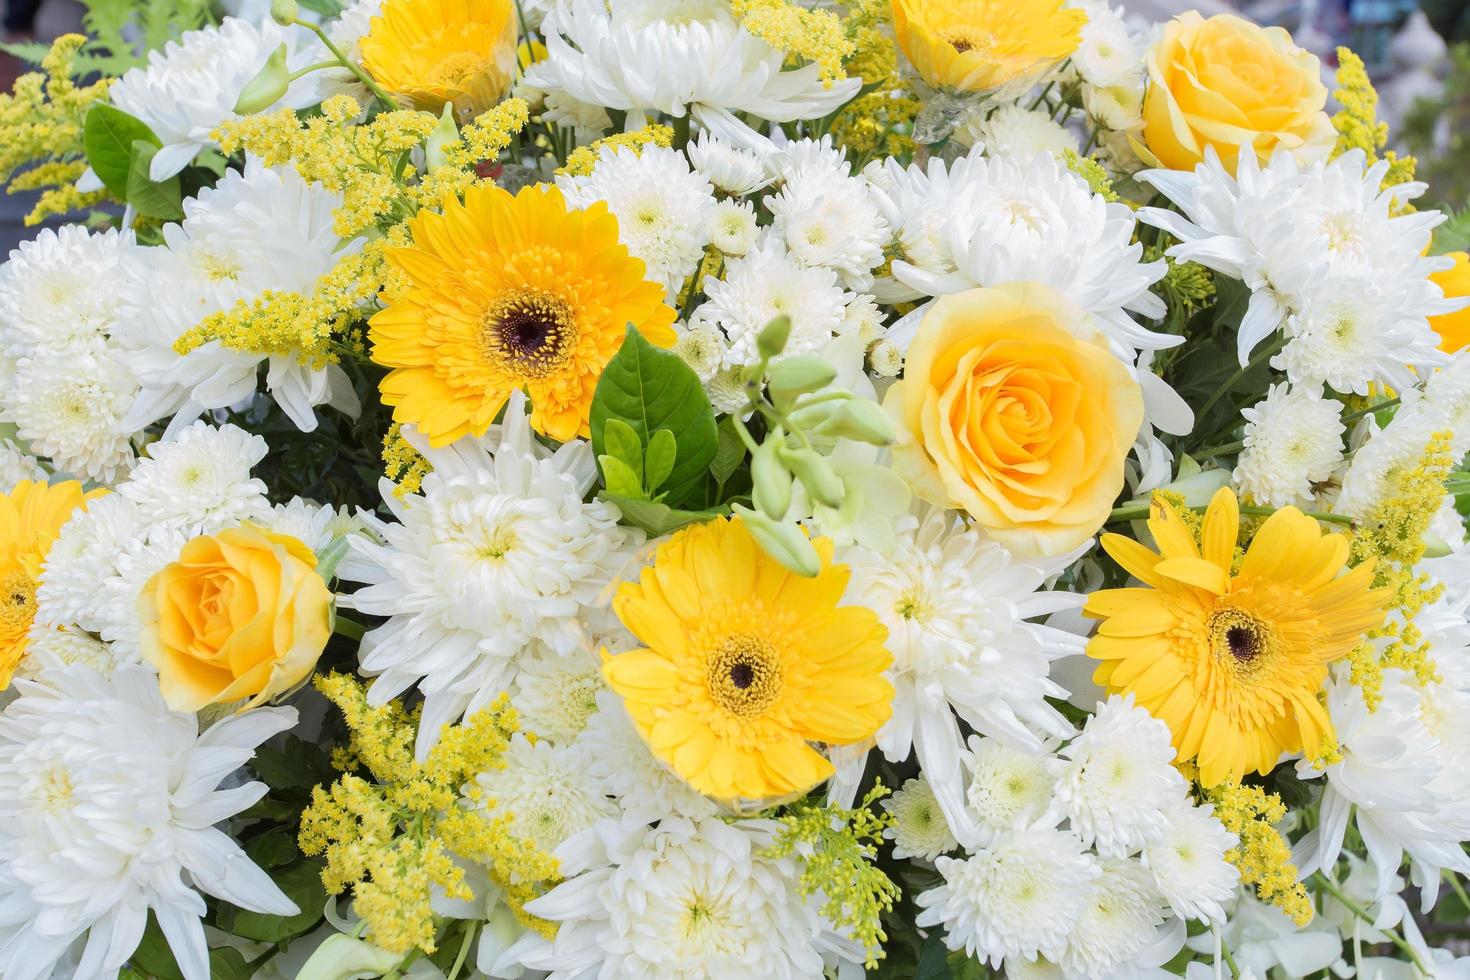 flores de crisantemo amarillas y blancas, la rosa estaba decorada con hojas verdes como corona para usar en el funeral. foto